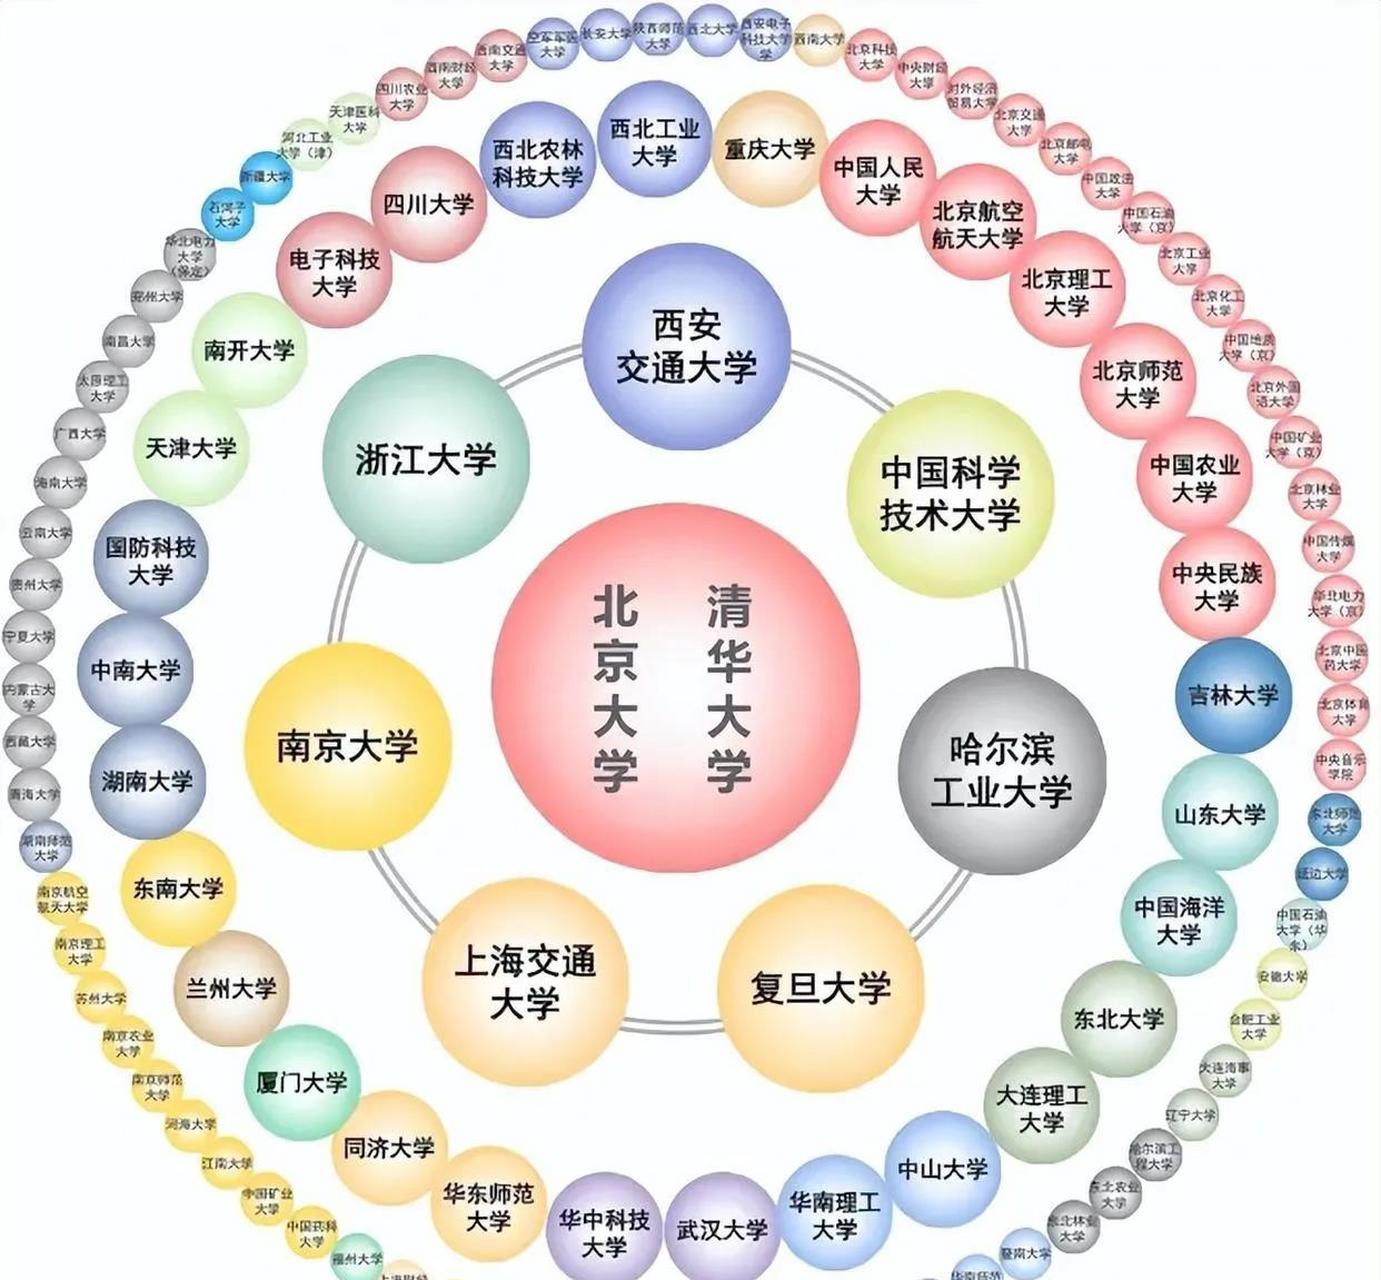 中国知名大学分为三个圈,在圆最中心的是清华和北大; 第一层圈子只